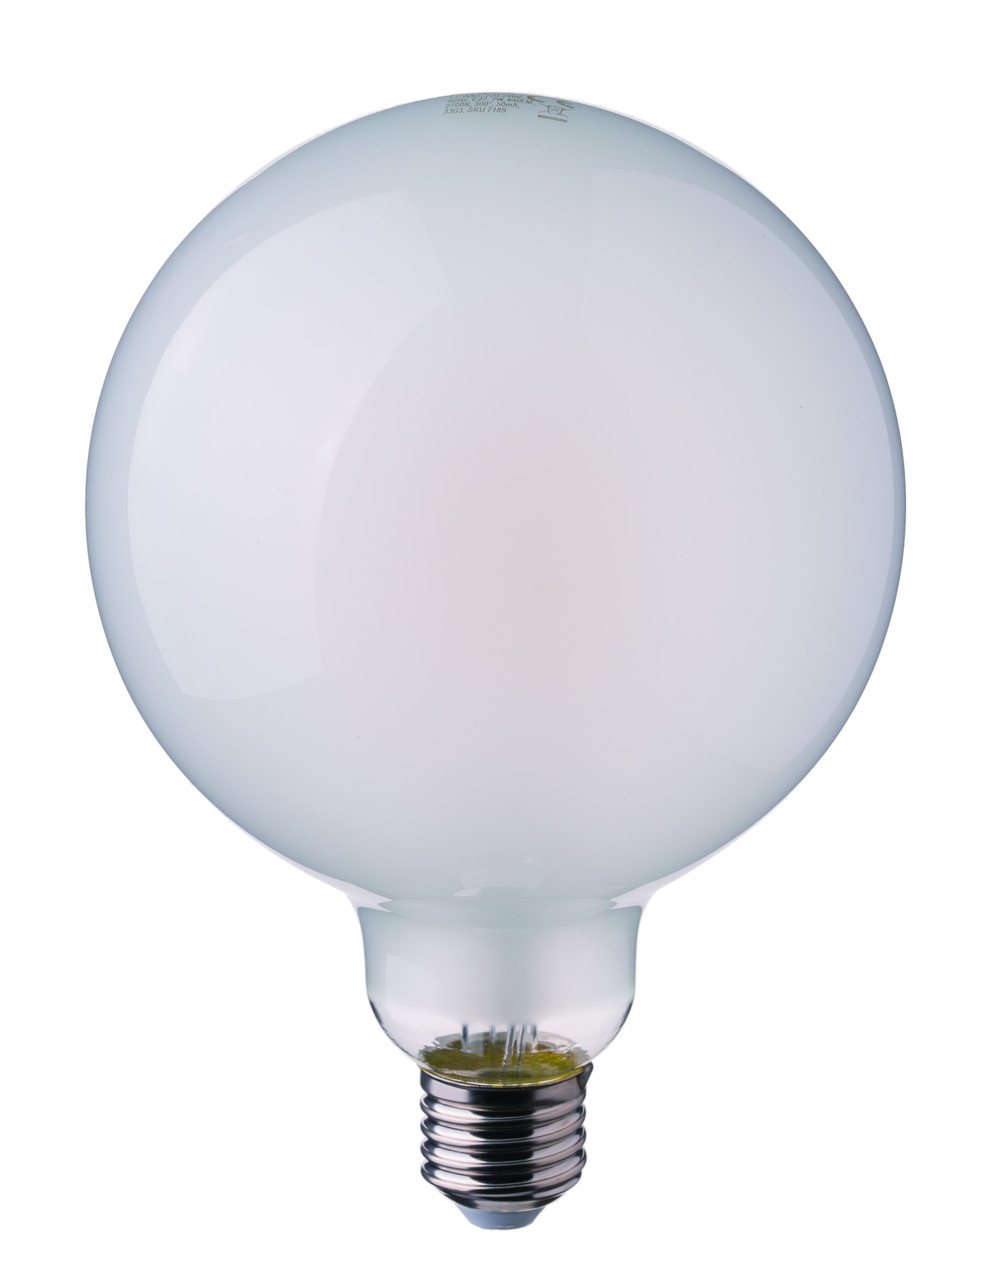 Филаментная лампа V-Tac 7 Вт, 800lm, G125, матовое стекло, Е27, 2700К